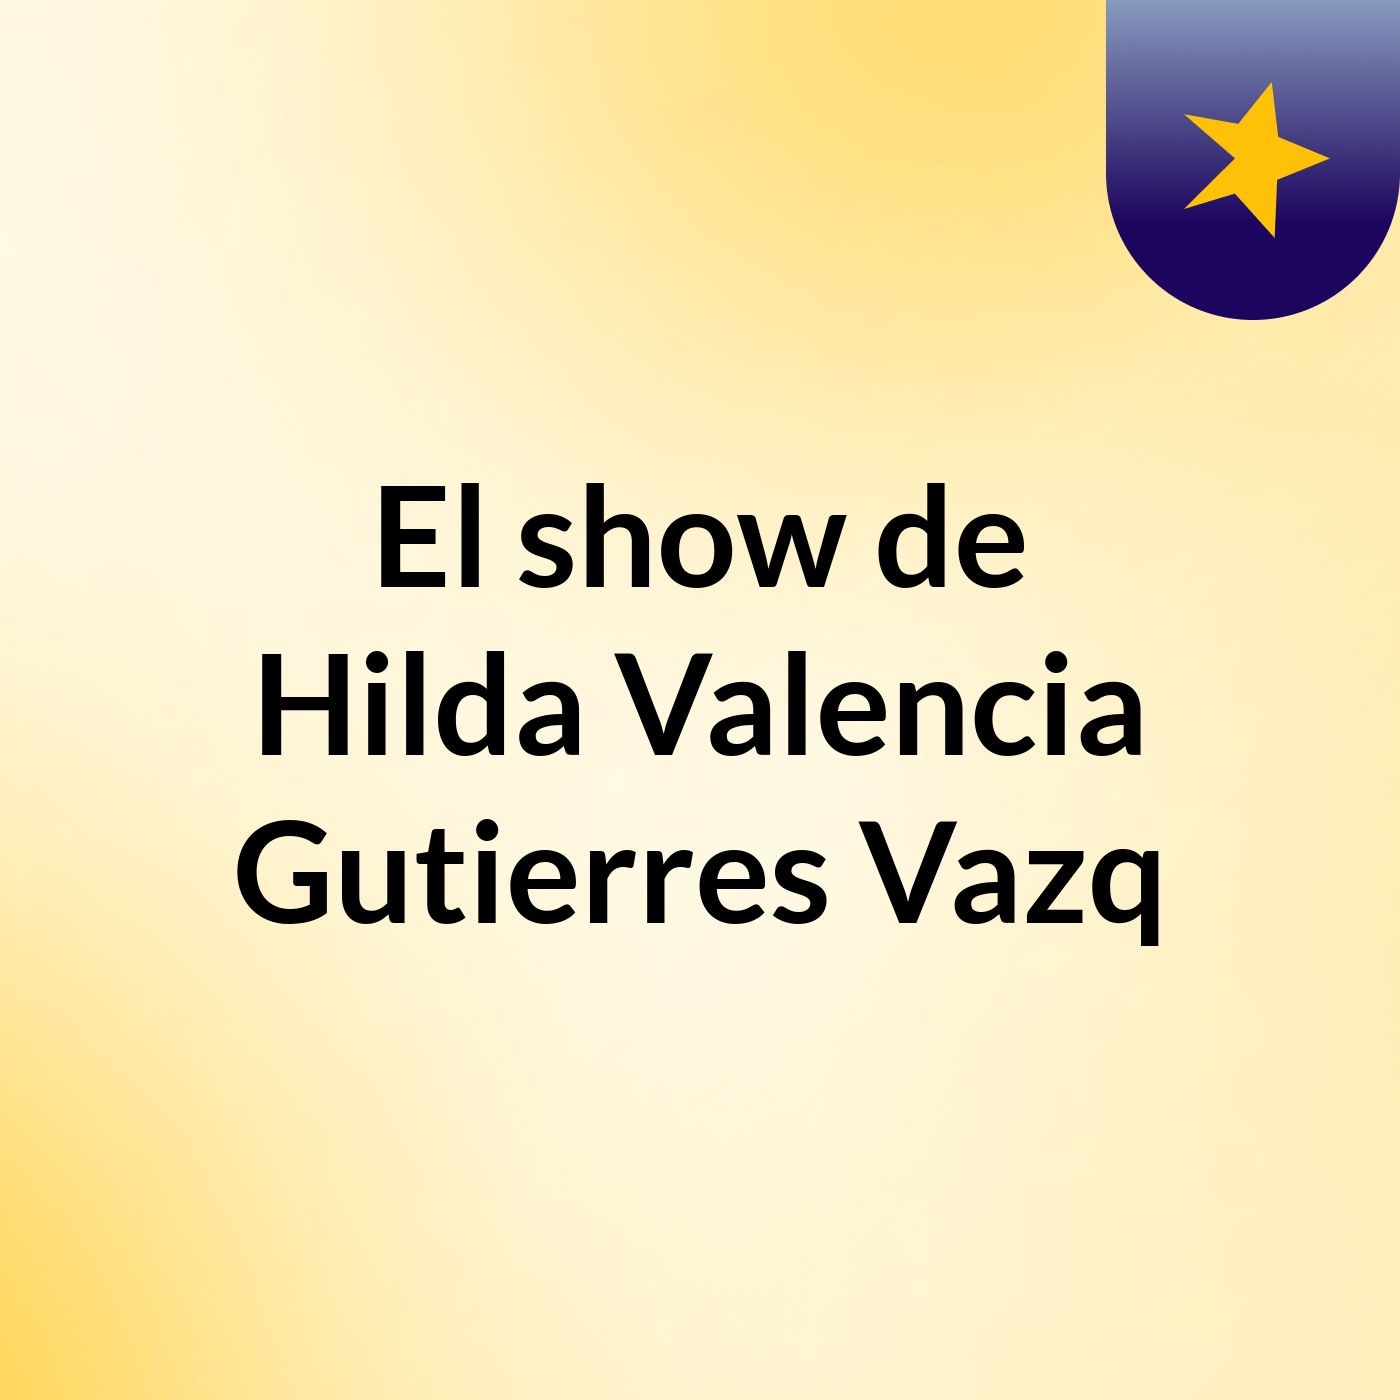 El show de Hilda Valencia Gutierres Vazq